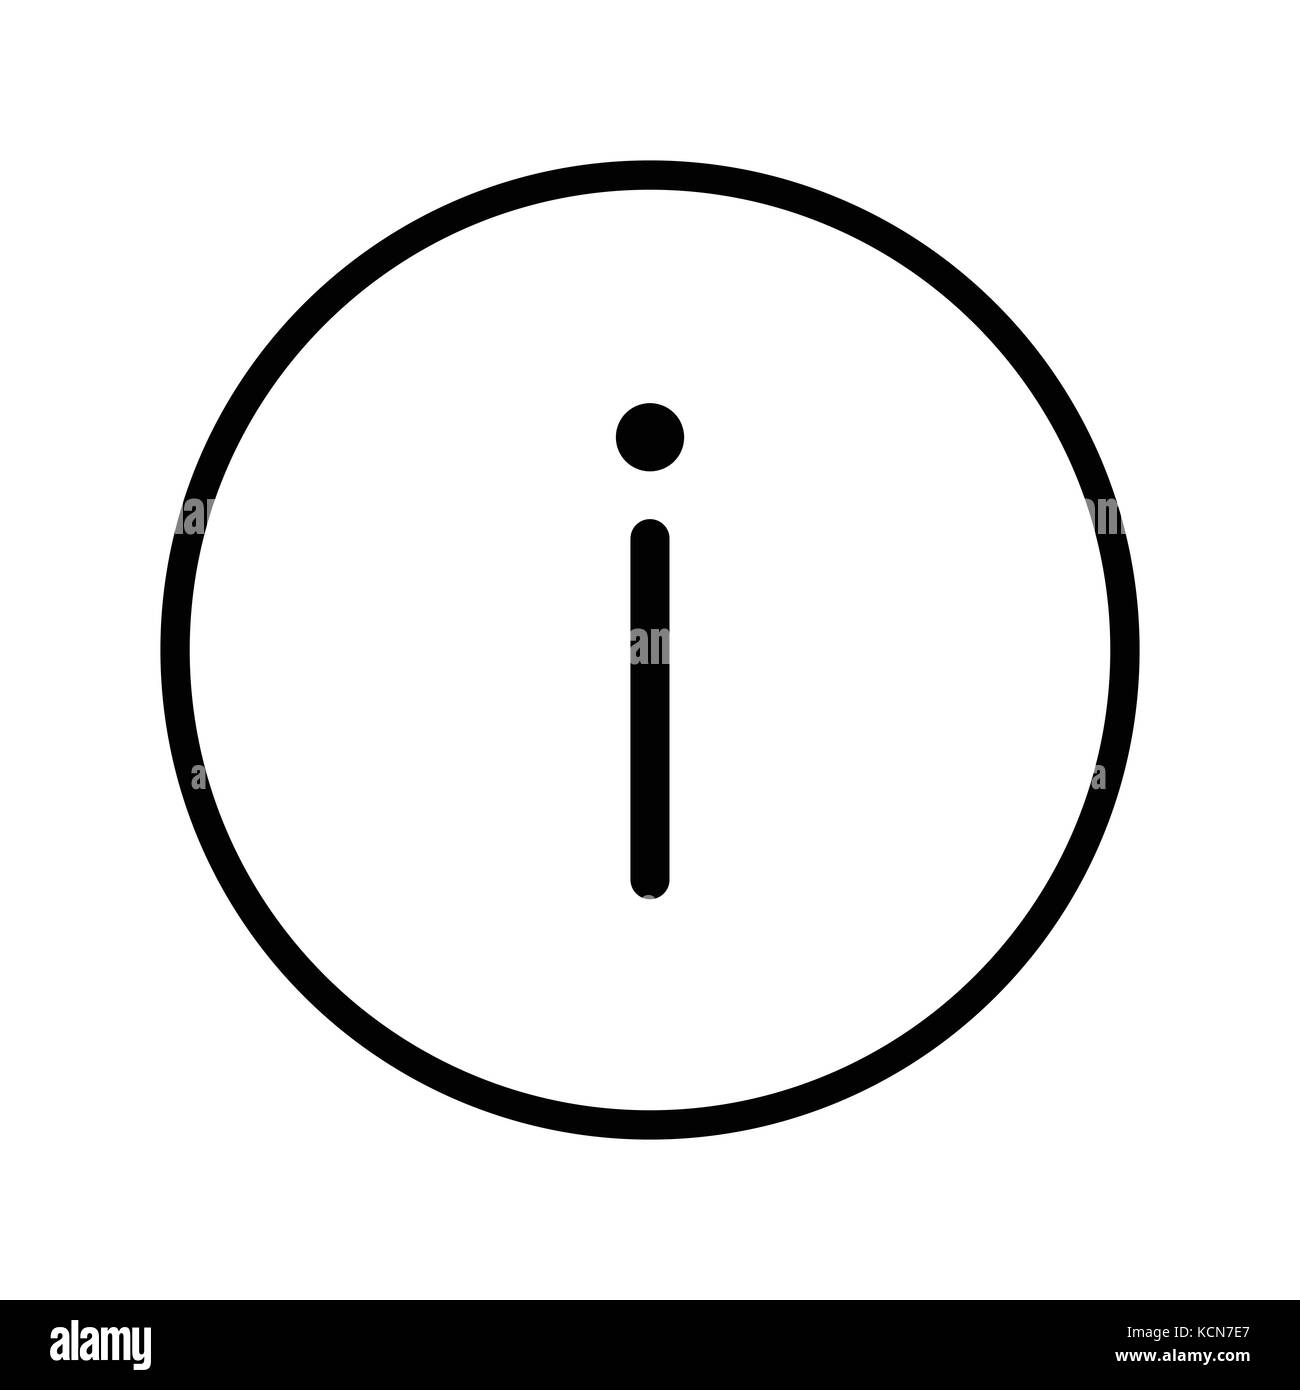 Vecteur d'info inscrivez-vous à l'icône de la ligne du cercle, symbole iconique dans un cercle, sur fond blanc. Vector design iconique. Illustration de Vecteur